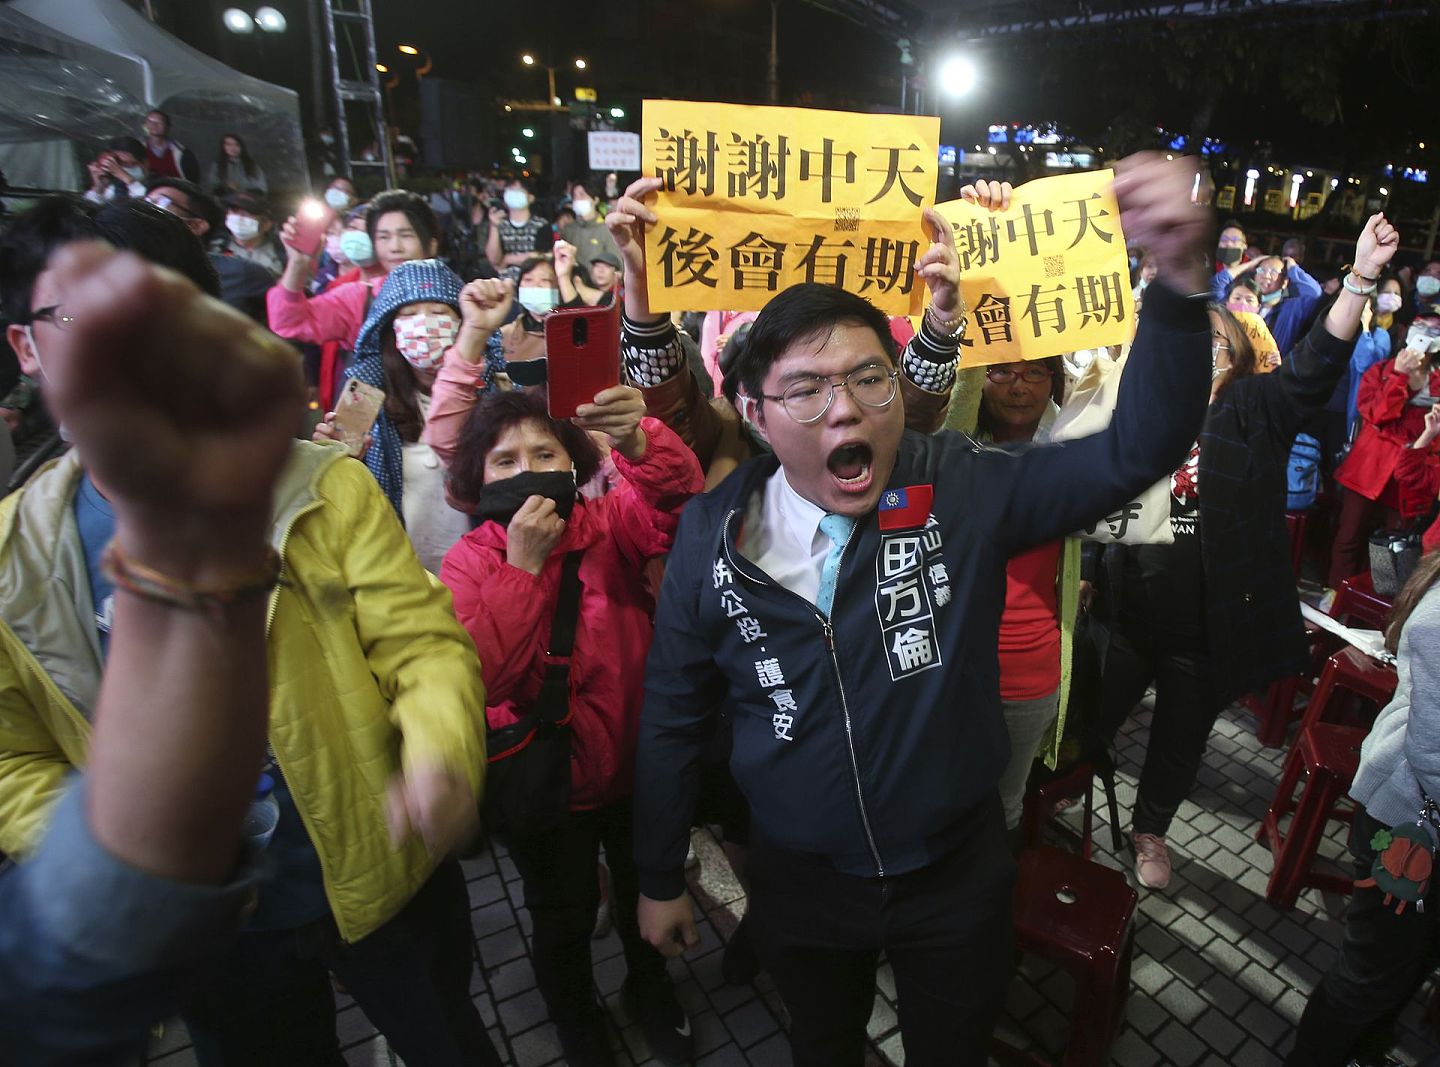 中天电视台的支持者举着横幅，上面写着:“谢谢中天电视台”。2020年12月11日，在台湾台北市中天电视台大厅，有线新闻频道停播后，“再见”。亲中国大陆的主要有线新闻频道中天电视在12月12日零時停止了播出，此前台湾政府以新闻专业性问题为由拒绝更新其营业执照。（AP）